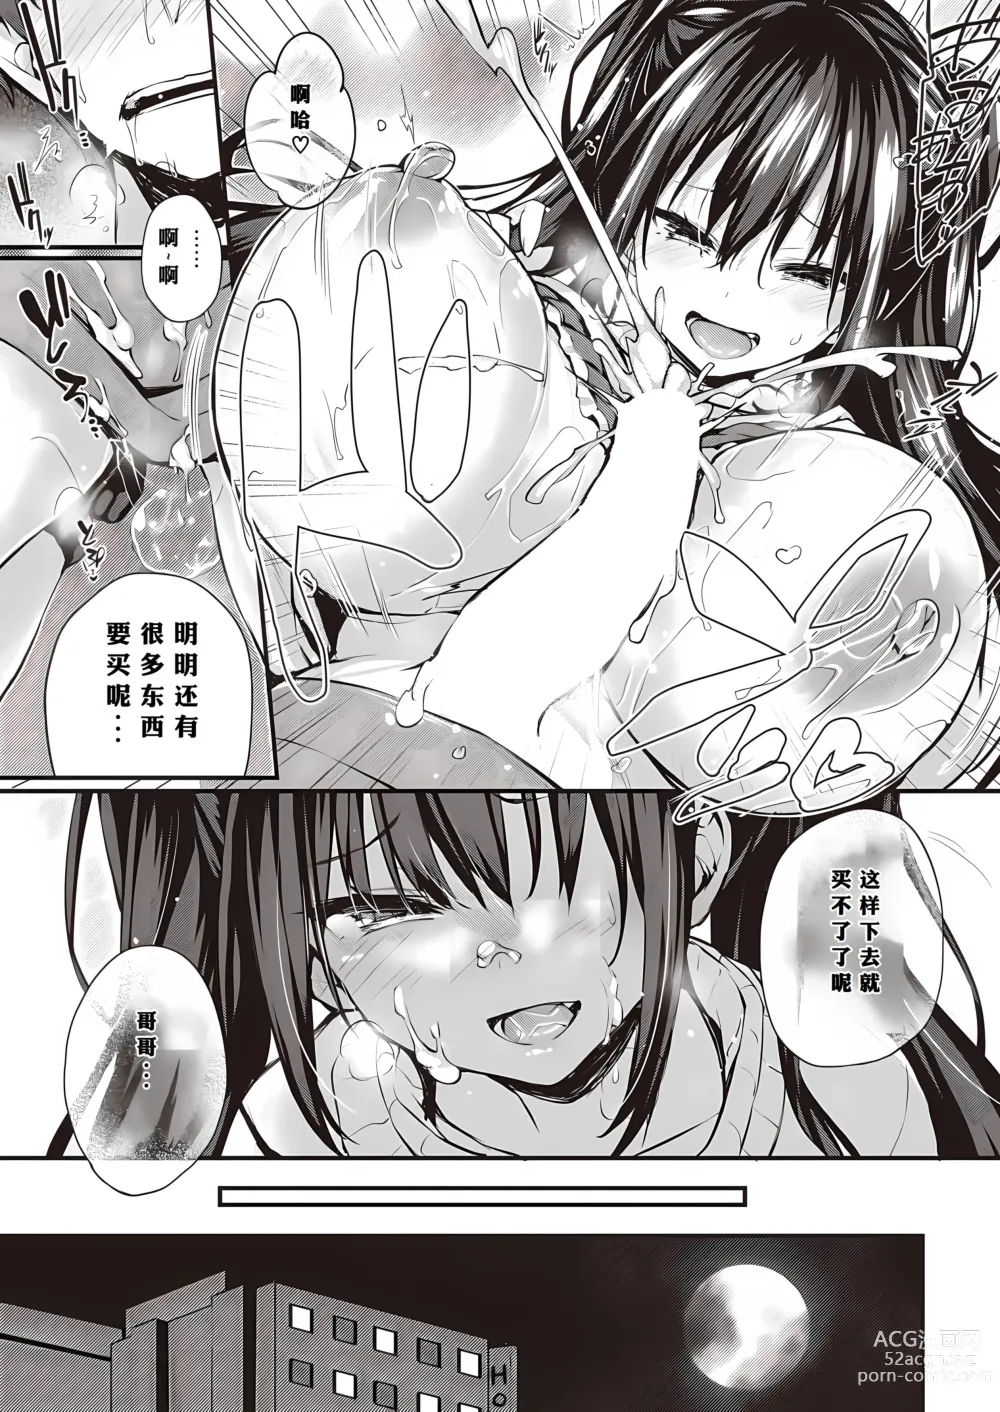 Page 26 of manga Oshiete Ageru + Motto Oshiete Ageru